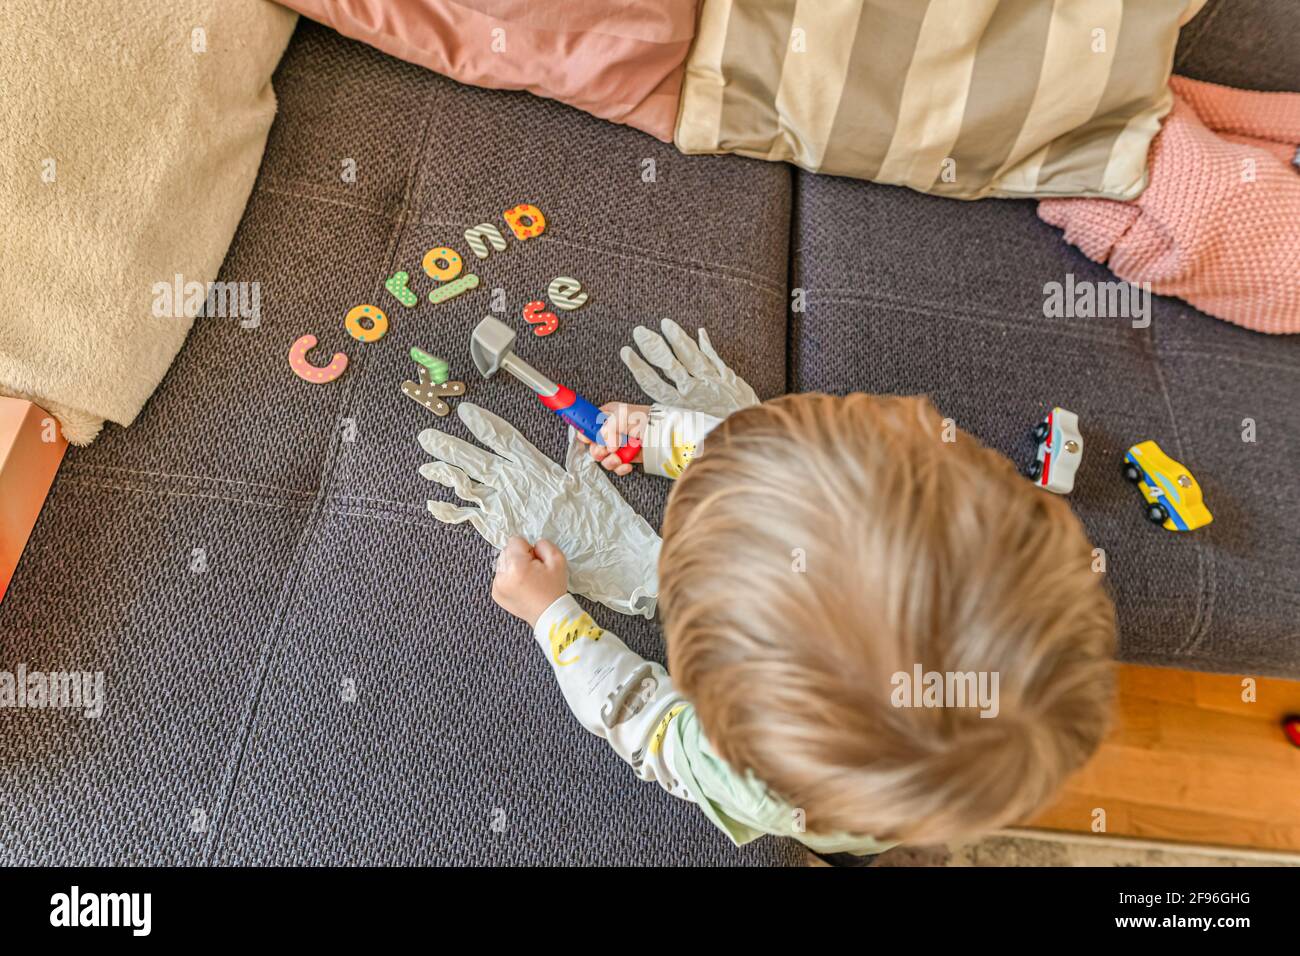 Tippte Buchstaben Corona Aufstieg in deutschen Worten ein, während ein kleiner Junge die Desinfektionshandschuhe ansah, während er sein Spiel unterbrach. Stockfoto